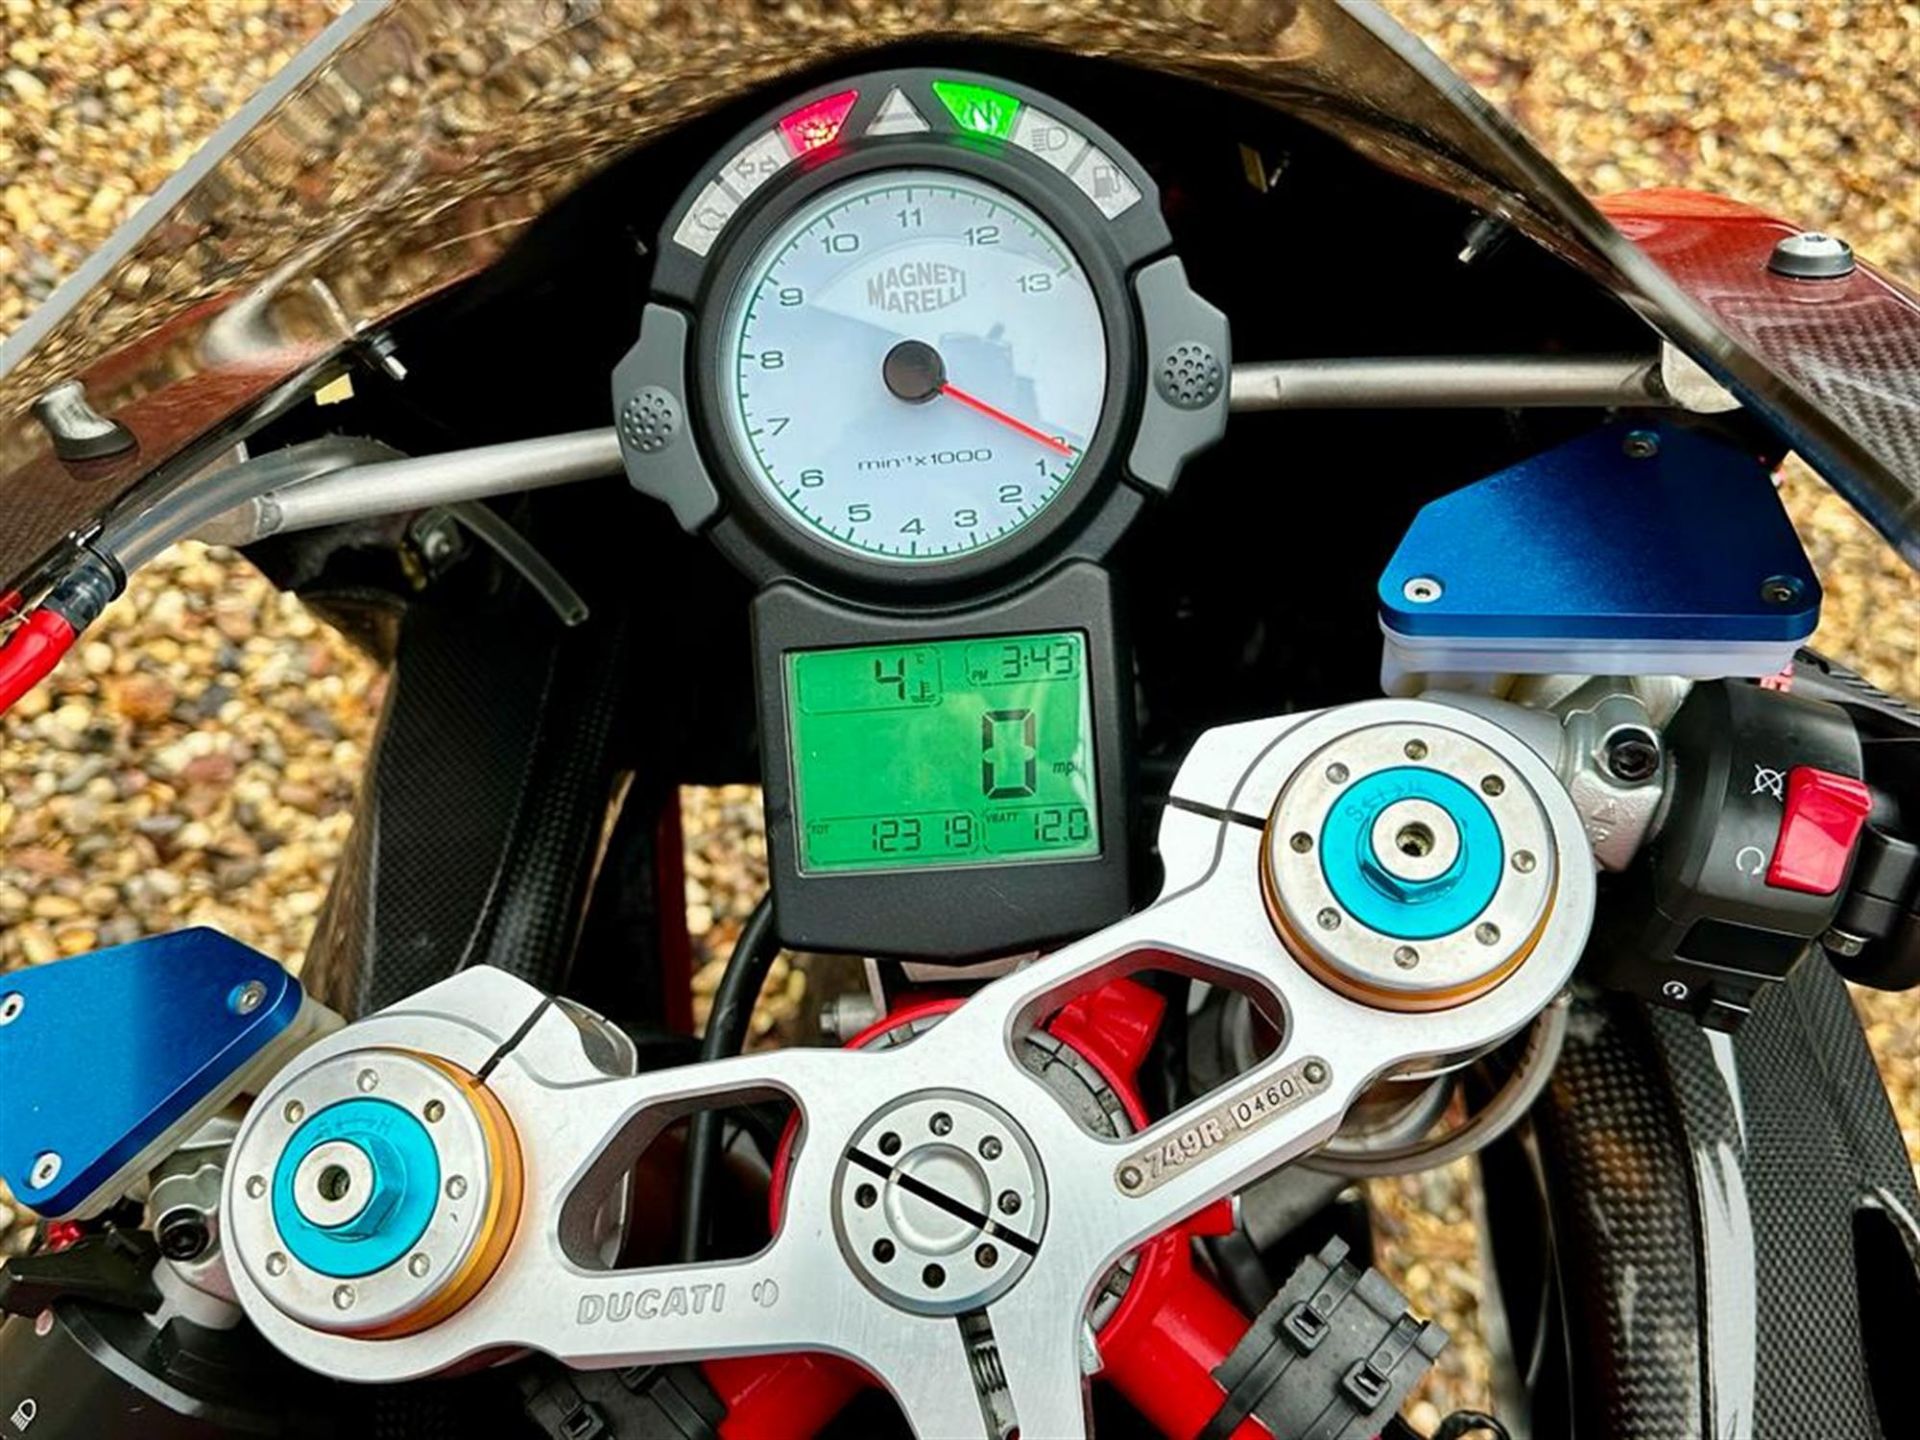 2004 Ducati 749R 749cc - Image 2 of 10